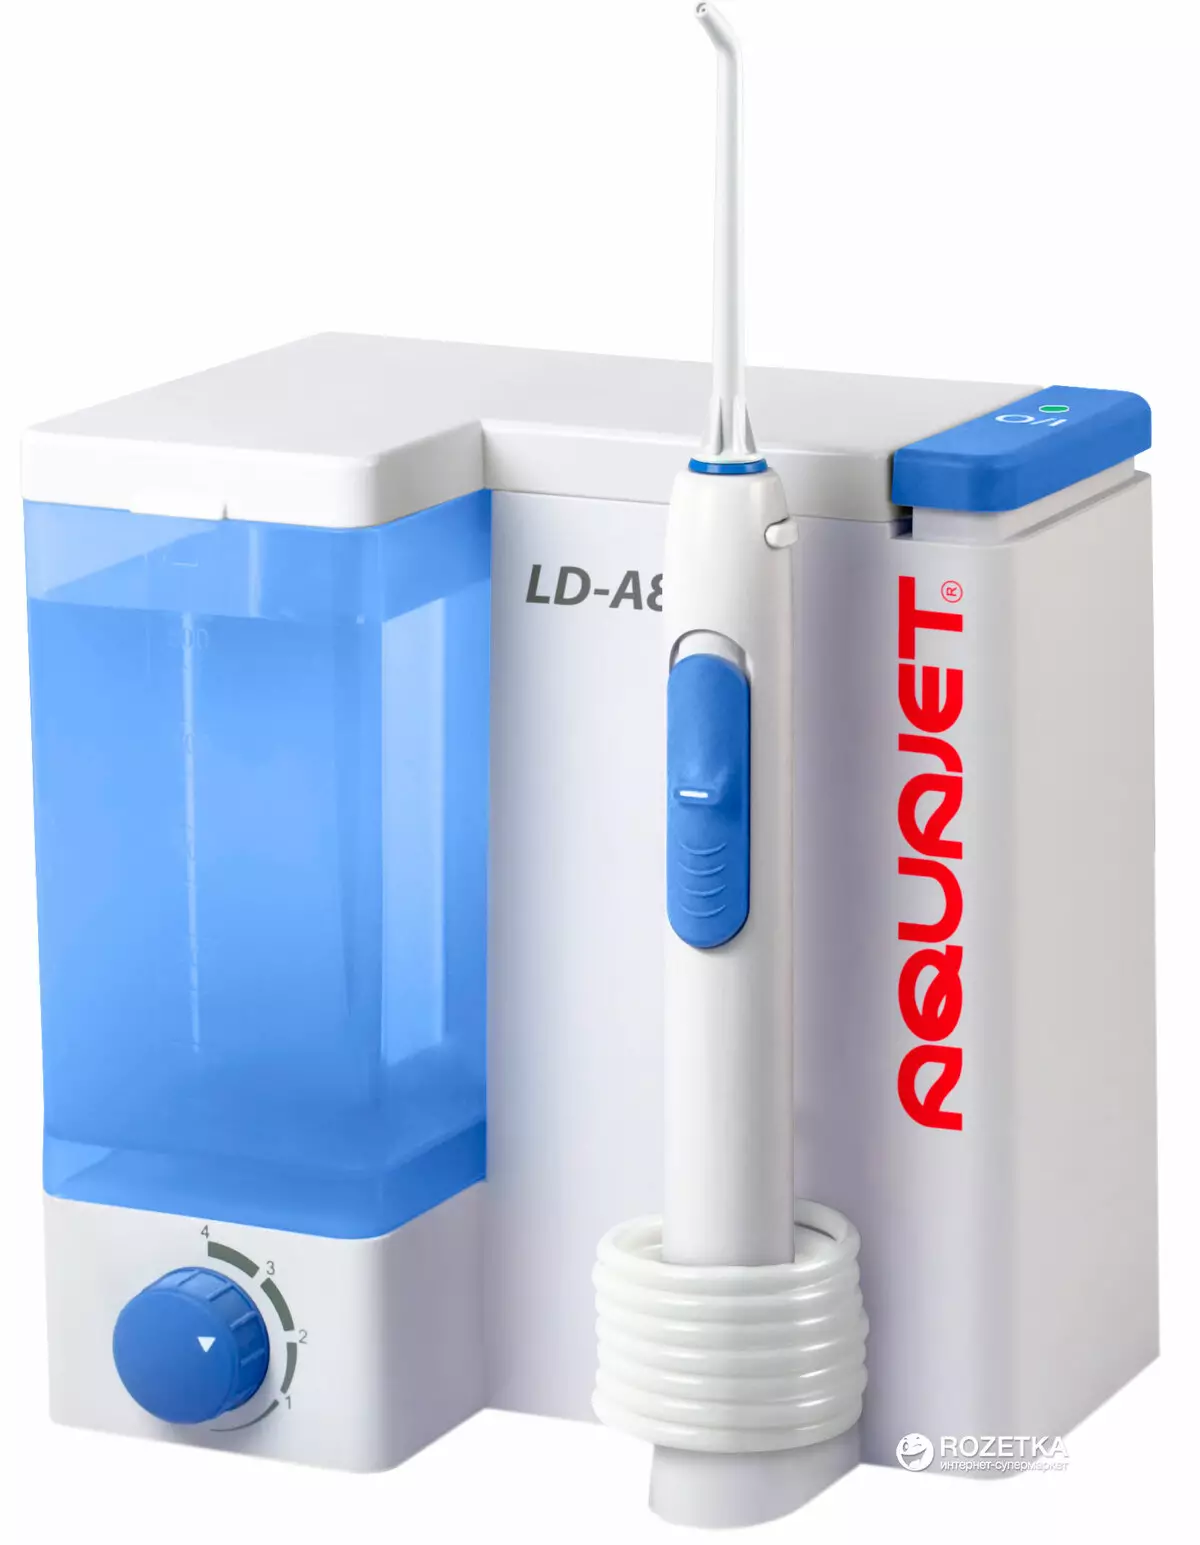 İrrigators AquaJet: Ağız boşluğu için LD-A7, LD-A8 ve LD-M3, Beyaz Taşınabilir Nozullar Dişler, Müşteri Yorumları 23962_4